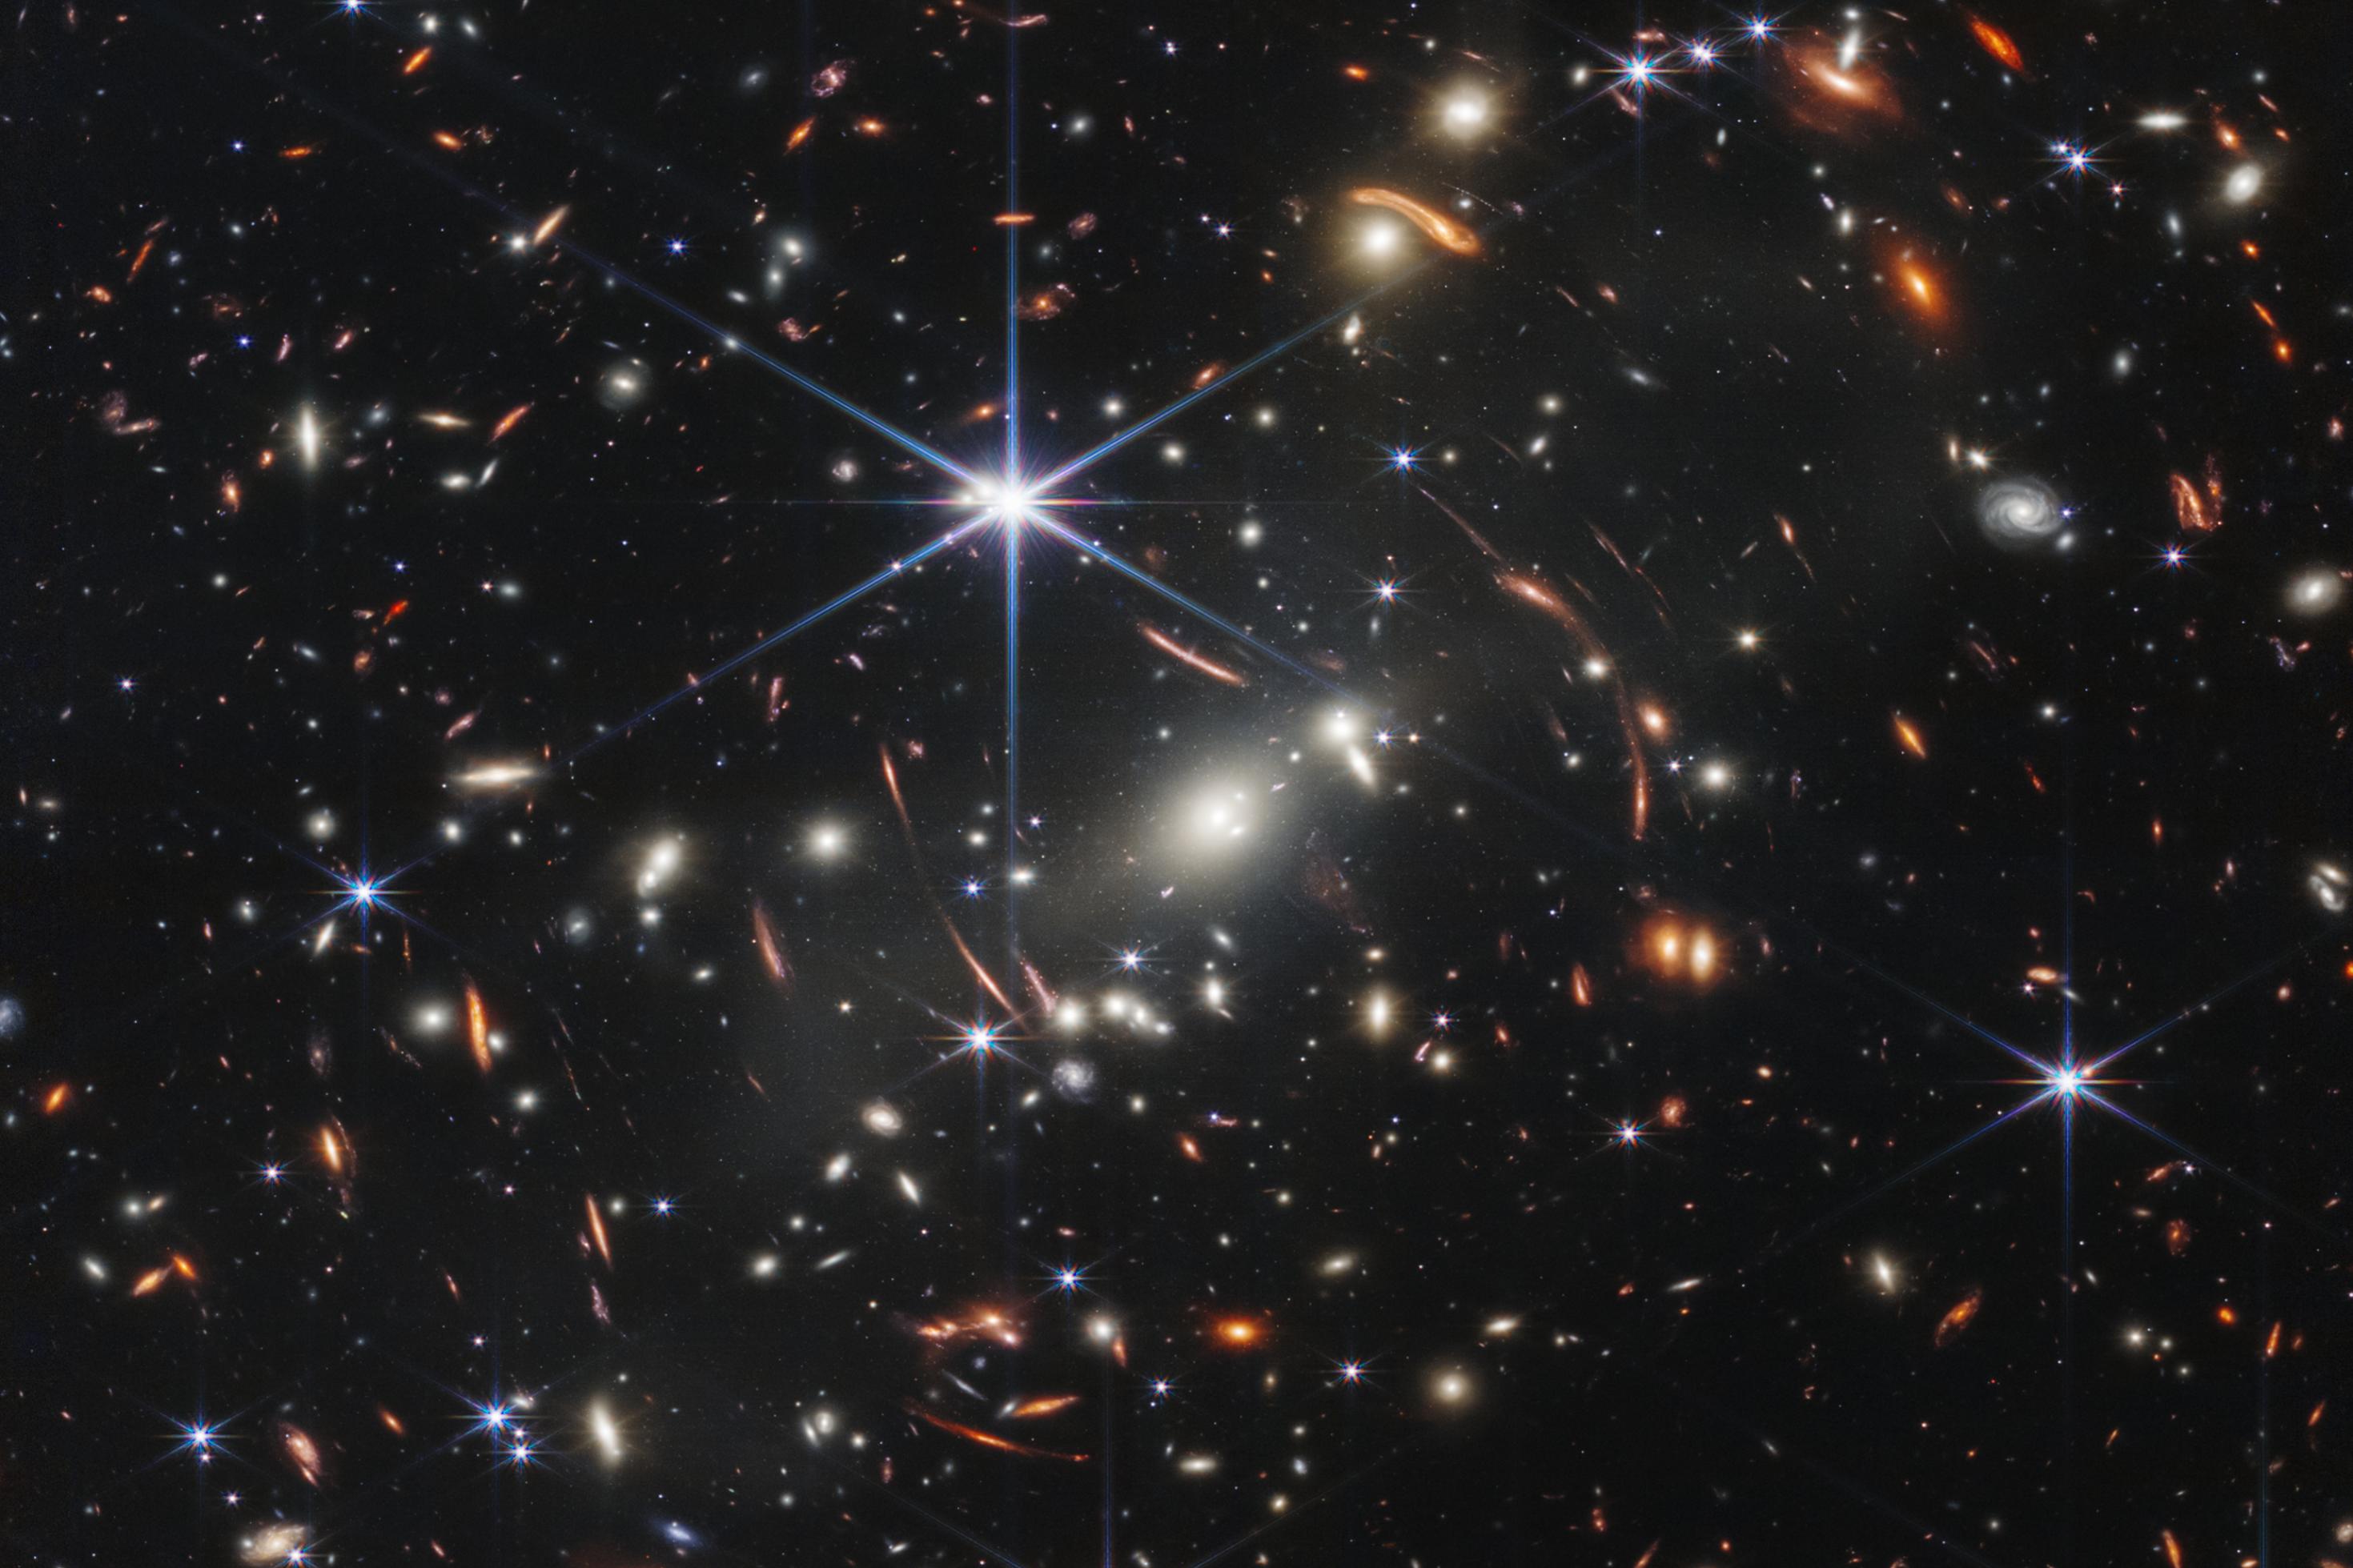 In dieser ersten Aufnahme des James Webb Space Telescope sind zahlreiche Galaxien zu sehen. Die zentralen in der Bildmitte gehören eine Galaxiencluster an, der mit seiner Masse das Licht dahinter liegender Galaxien umlenkt und verzerrt. So erschienen um den zentralen Cluster herum gebogene Objekte, Galaxien aus dem frühesten Universums.